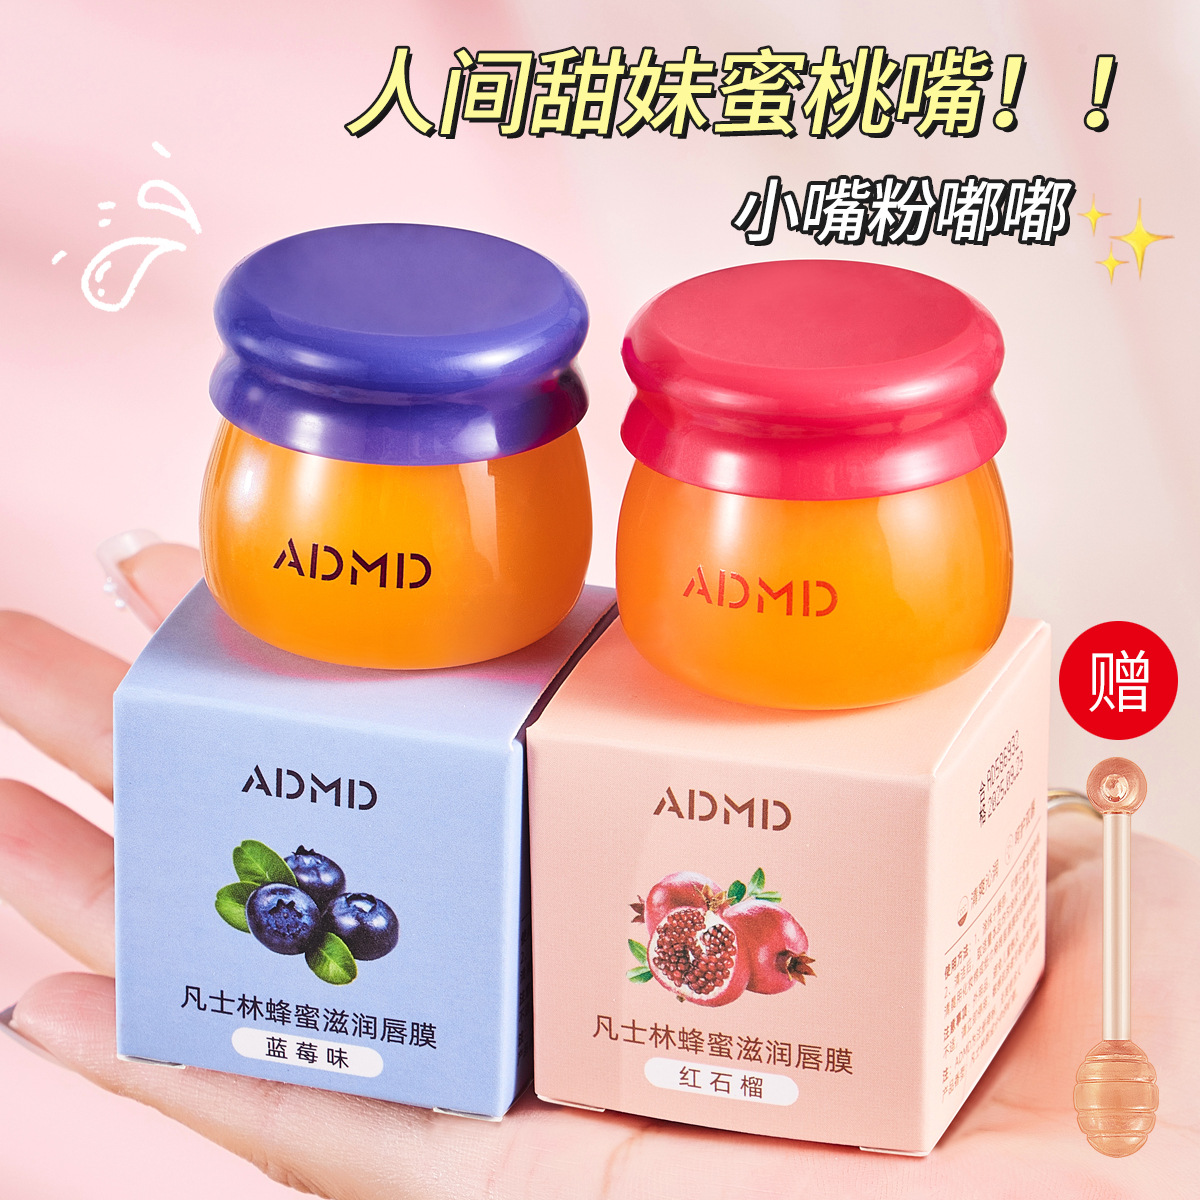 ADMD Vaseline Lip Moisturizing Lip Balm Honeybee Lip Balm Blueberry Strawberry Moisturizing Lip Balm for Women